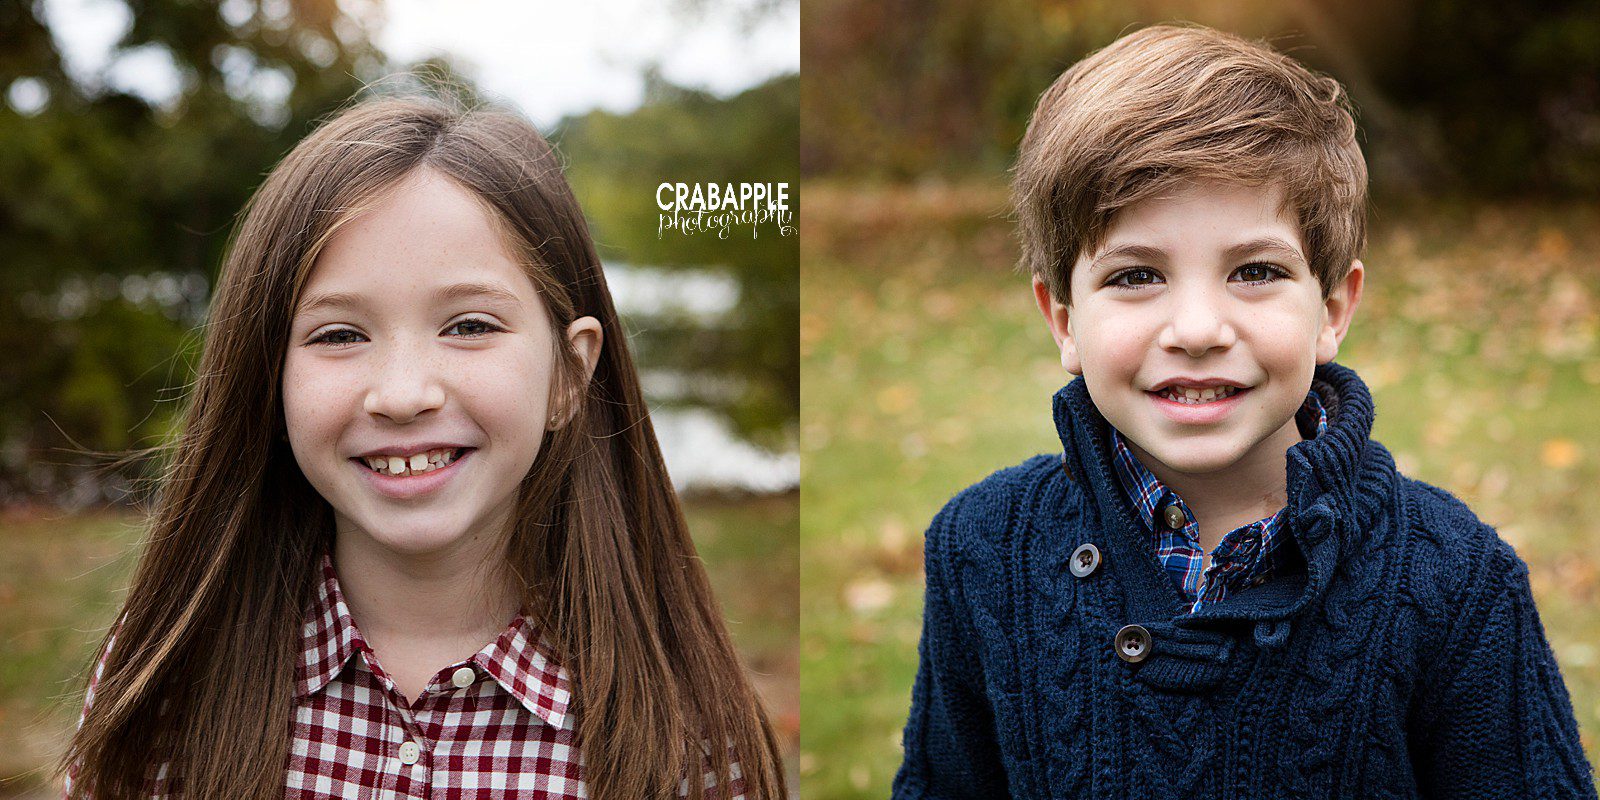 children portrait photography massachusetts